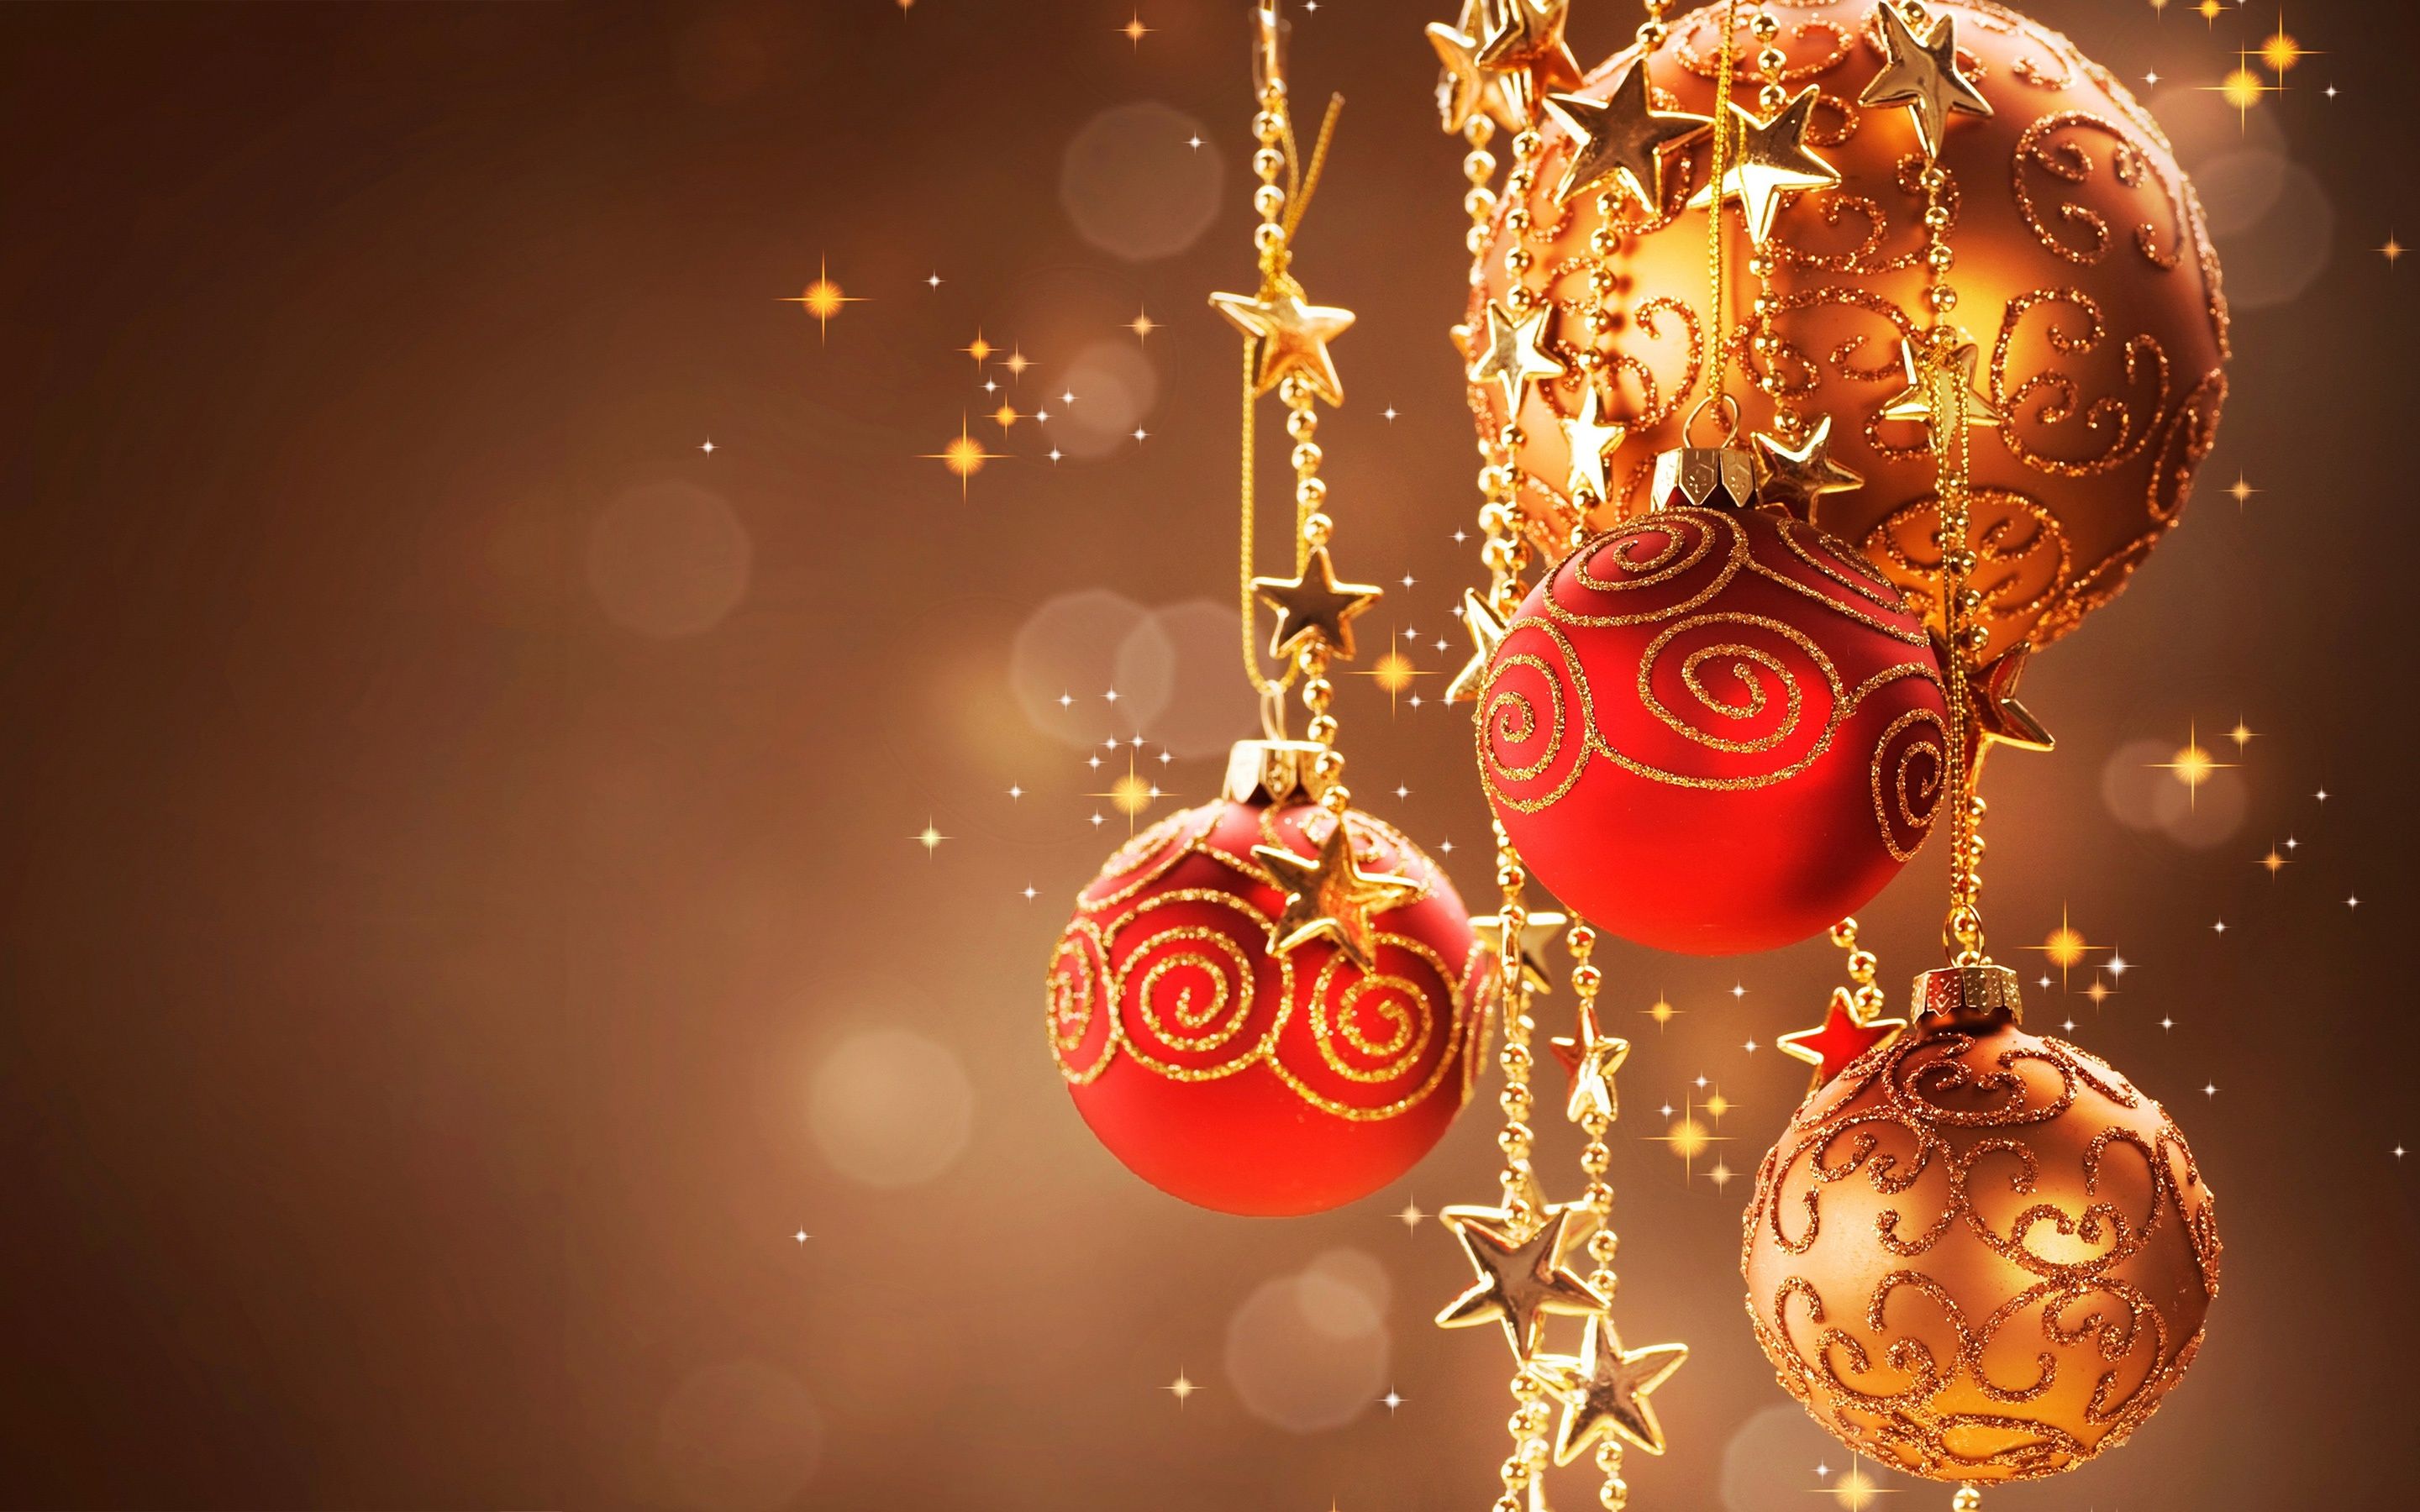 Disney Christmas Wallpaper HD Widescreen Backgrounds - Merry